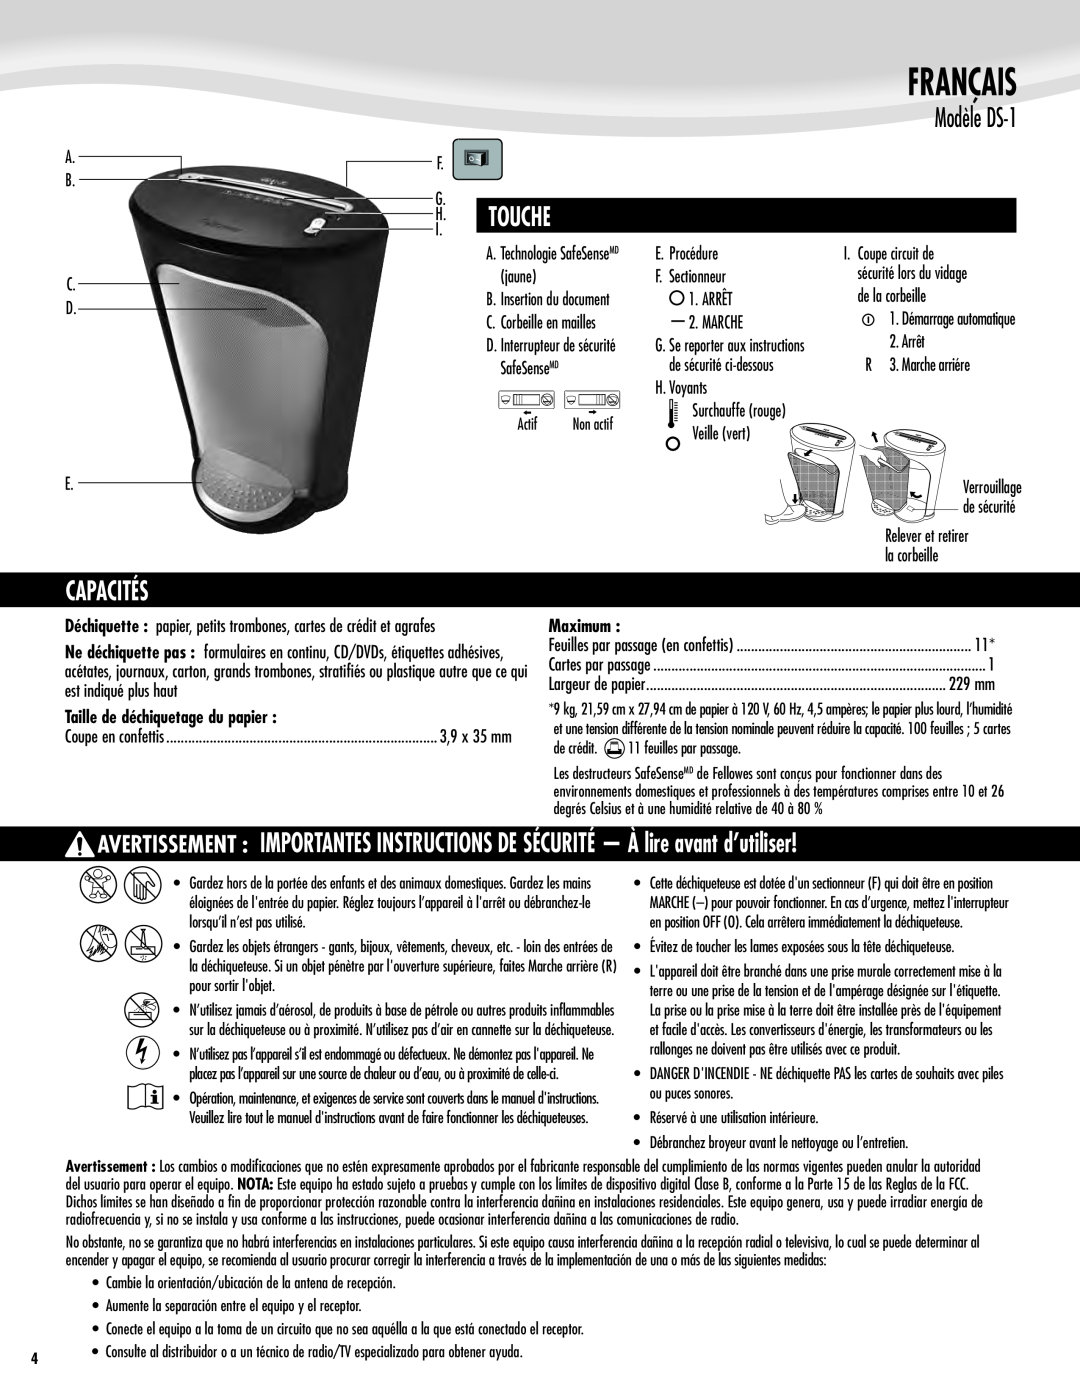 Fellowes manual Modèle DS-1, Capacités, Taille de déchiquetage du papier, Maximum, Français, Touche 